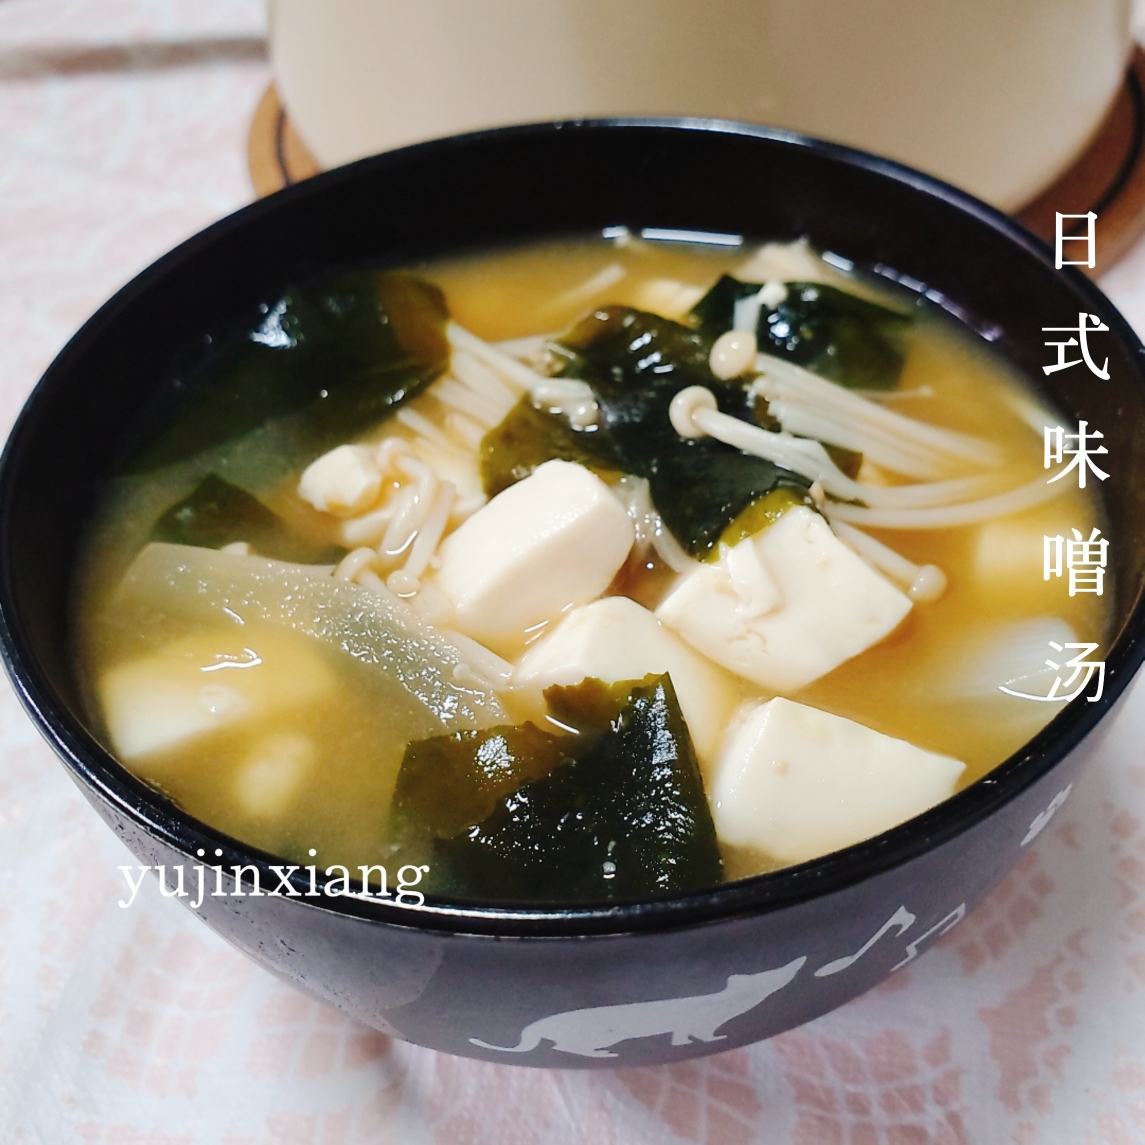 日本人教你做味噌汤 日本家庭料理 一辈子也喝不够 的做法步骤图 郁金香的日式养生馆 下厨房